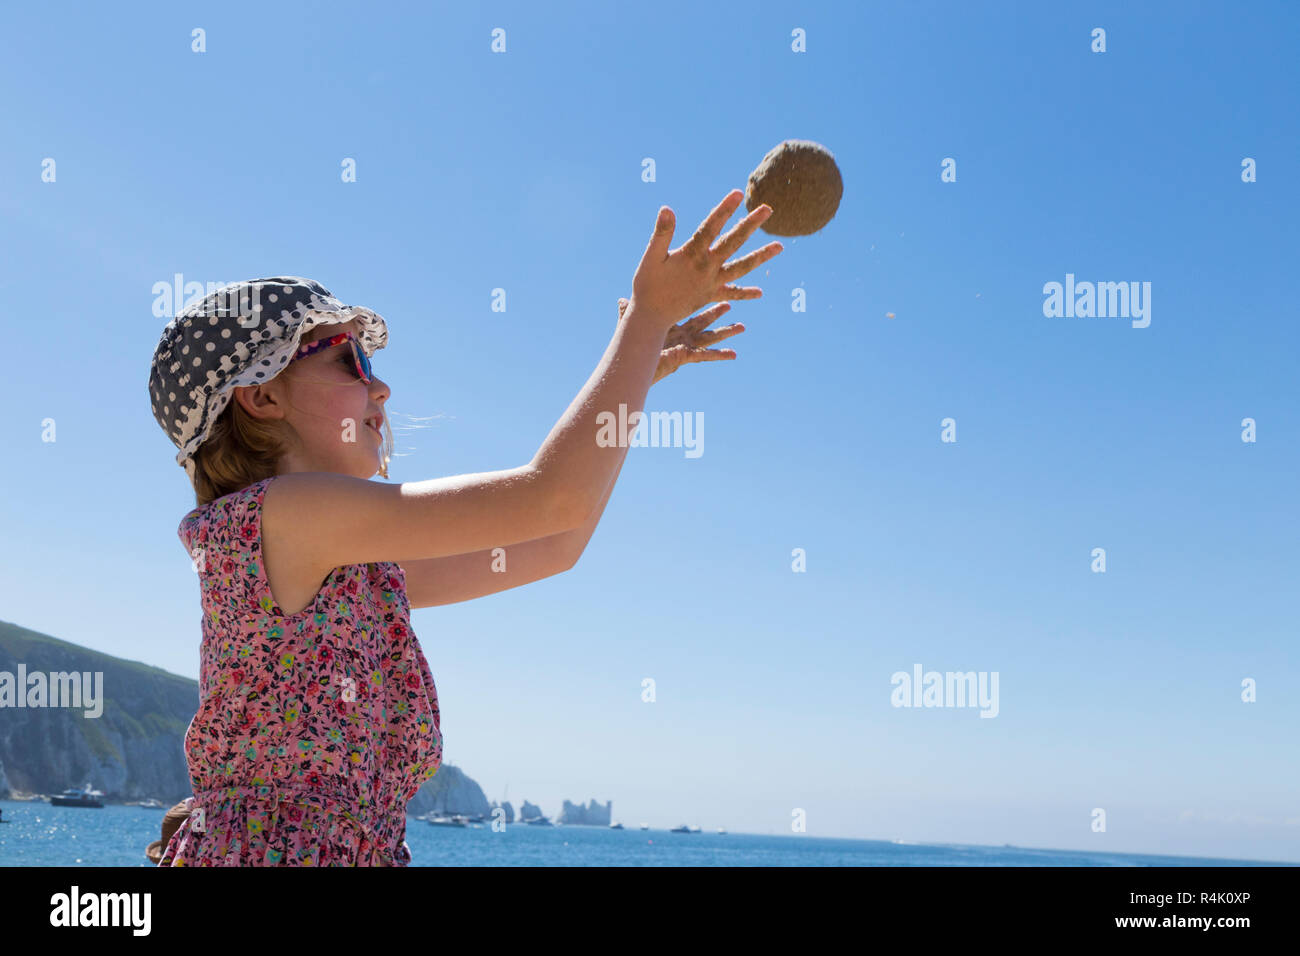 Niña de 8 años / 8 años, jugando a tirar una bola de arena / juega en la  playa en Alum Bay en la Isla de Wight, Reino Unido. Llevar sombrero y